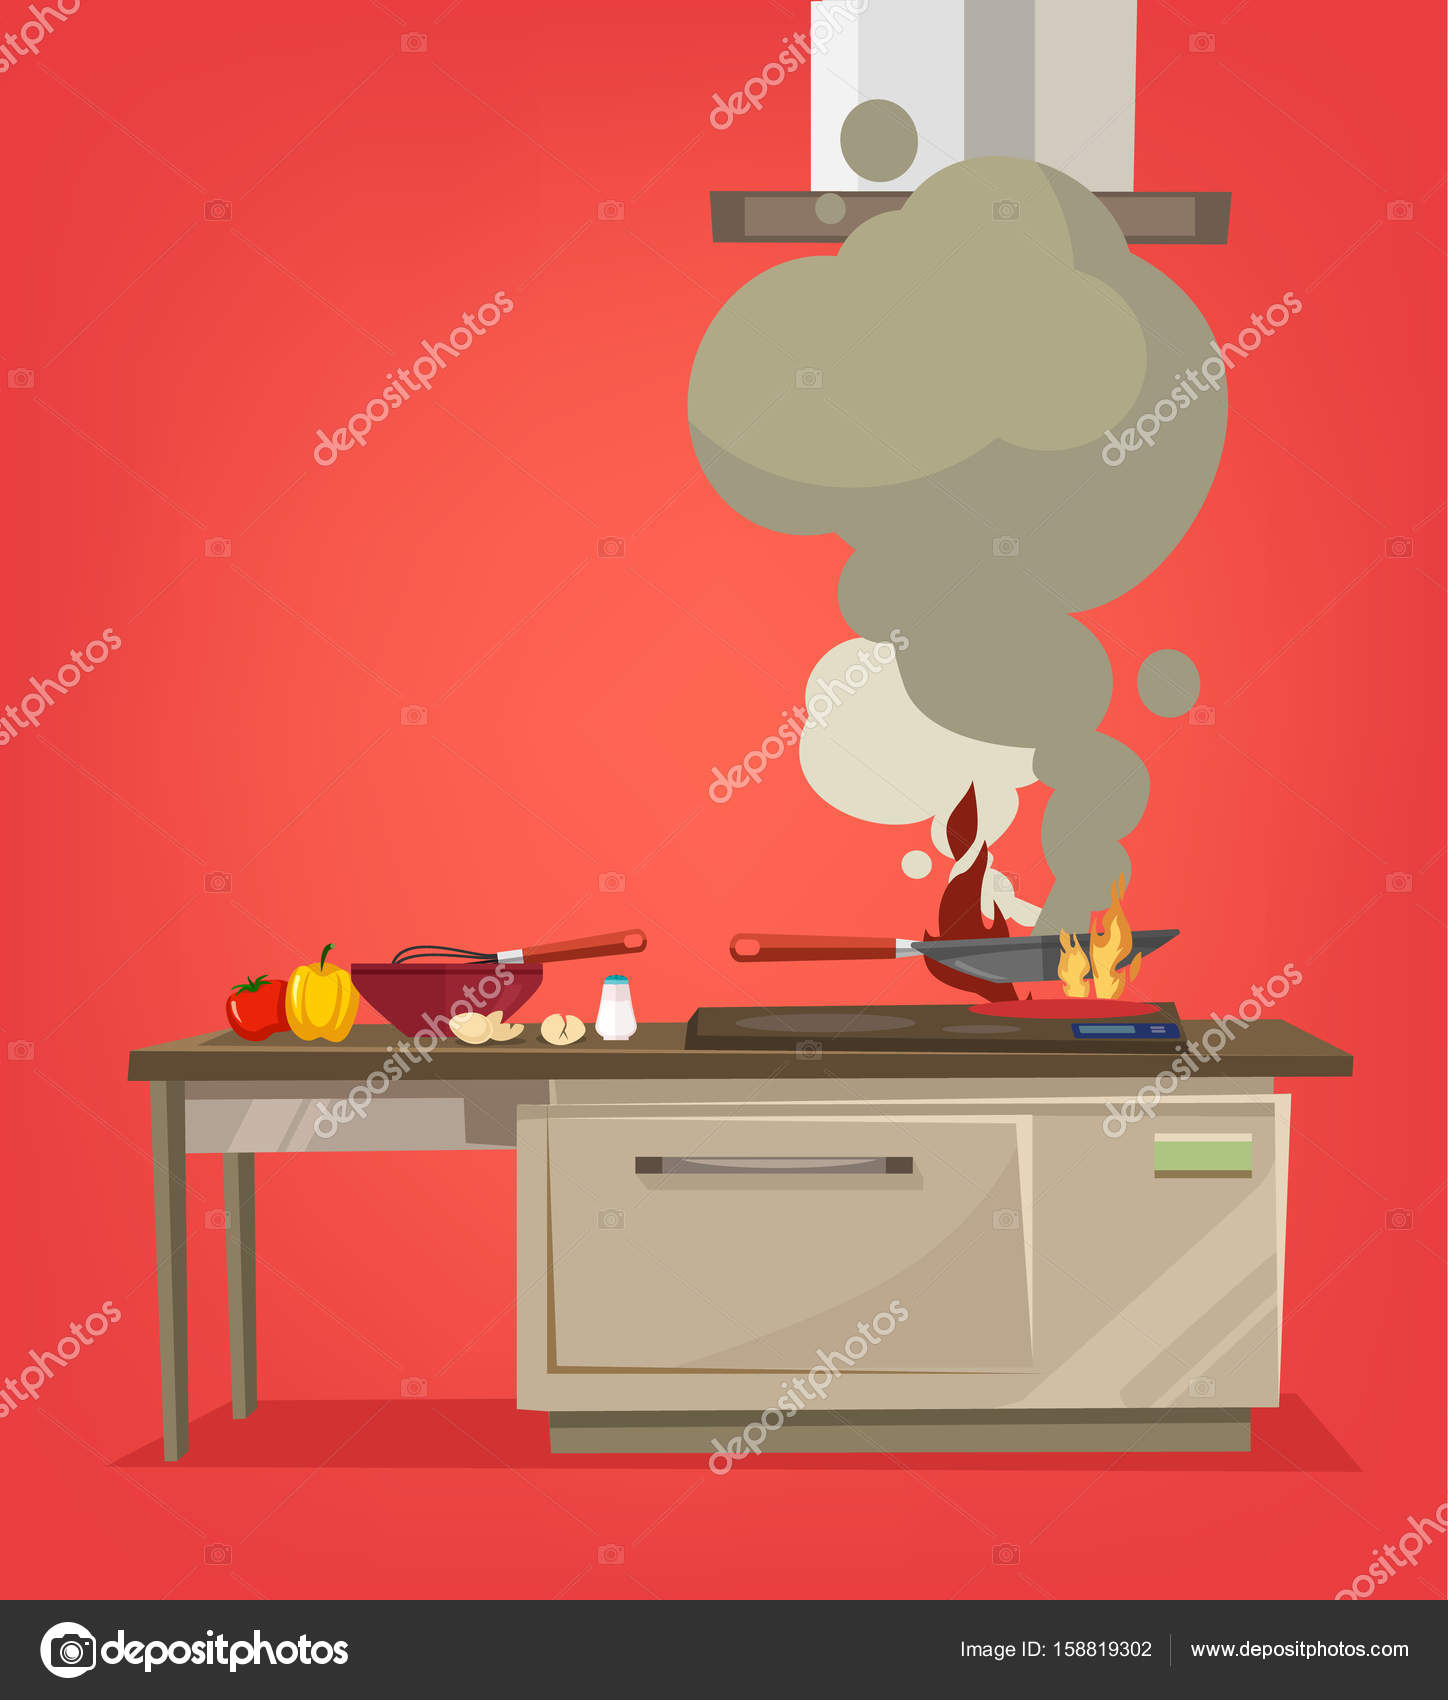 Cocina estufa quema alimentos. Ilustración de dibujos ...